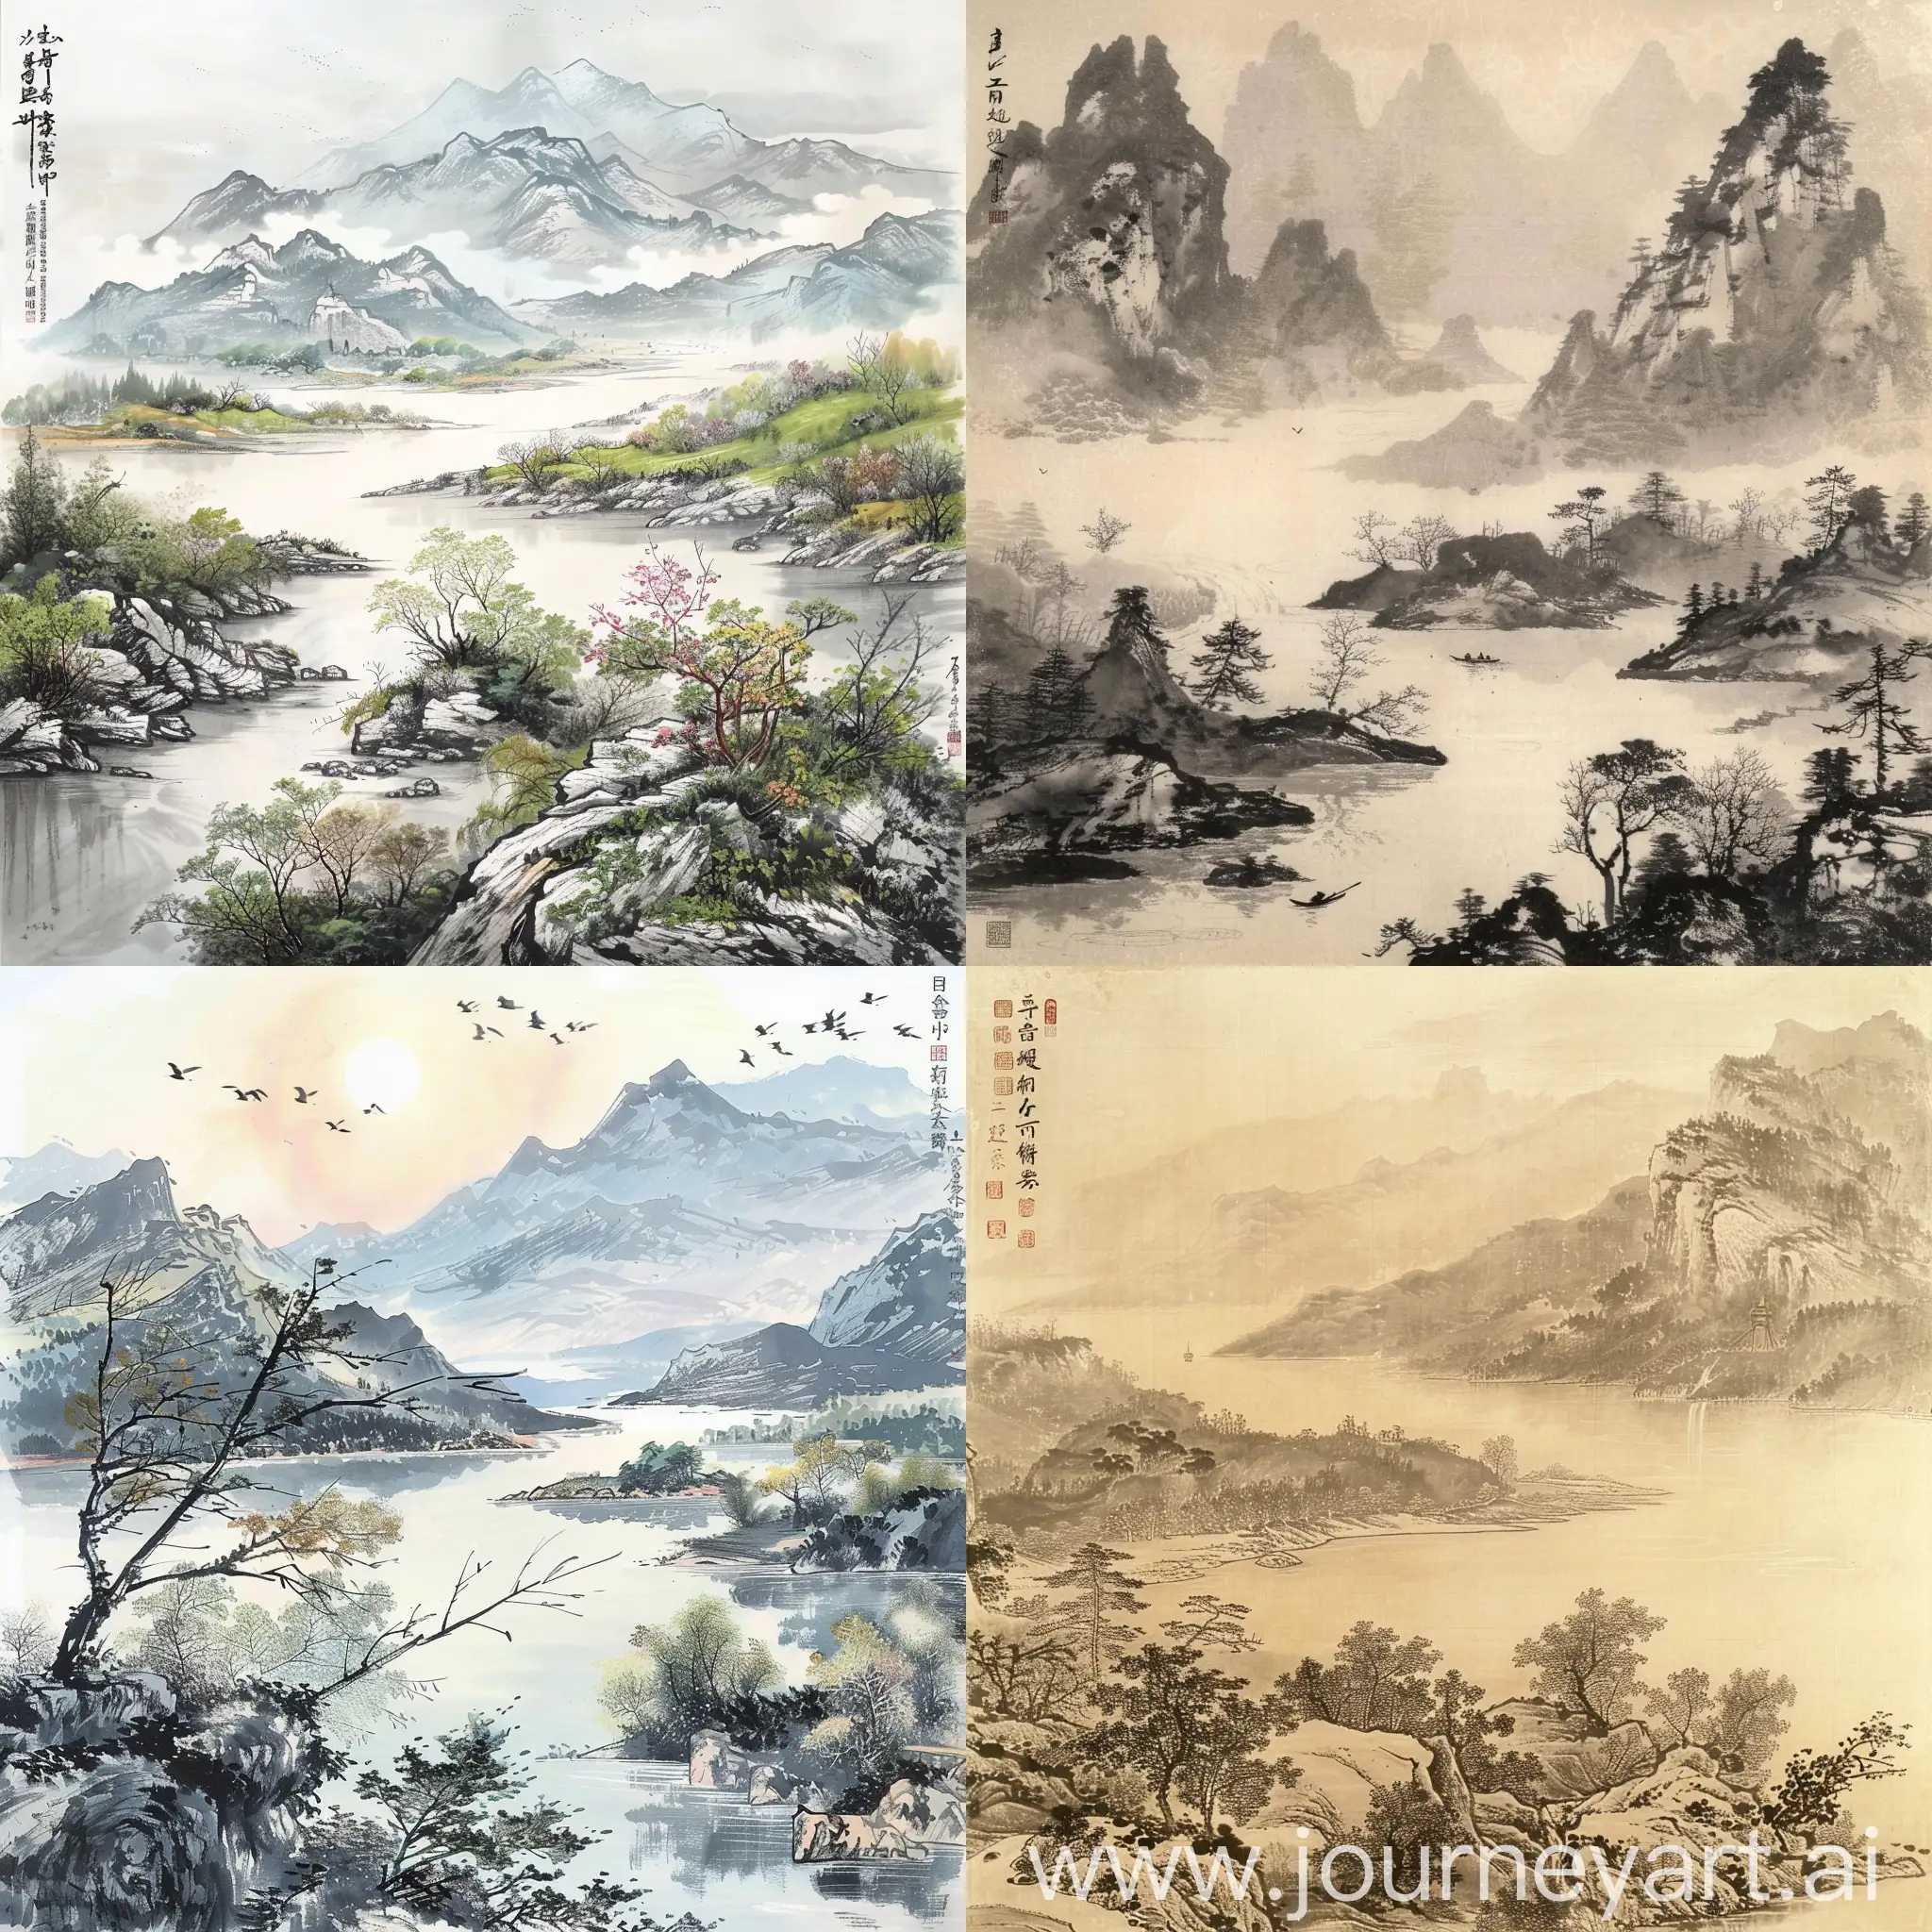 以中国传统水墨画风格呈现出山川湖泊美景，展现中国的诗意与韵味